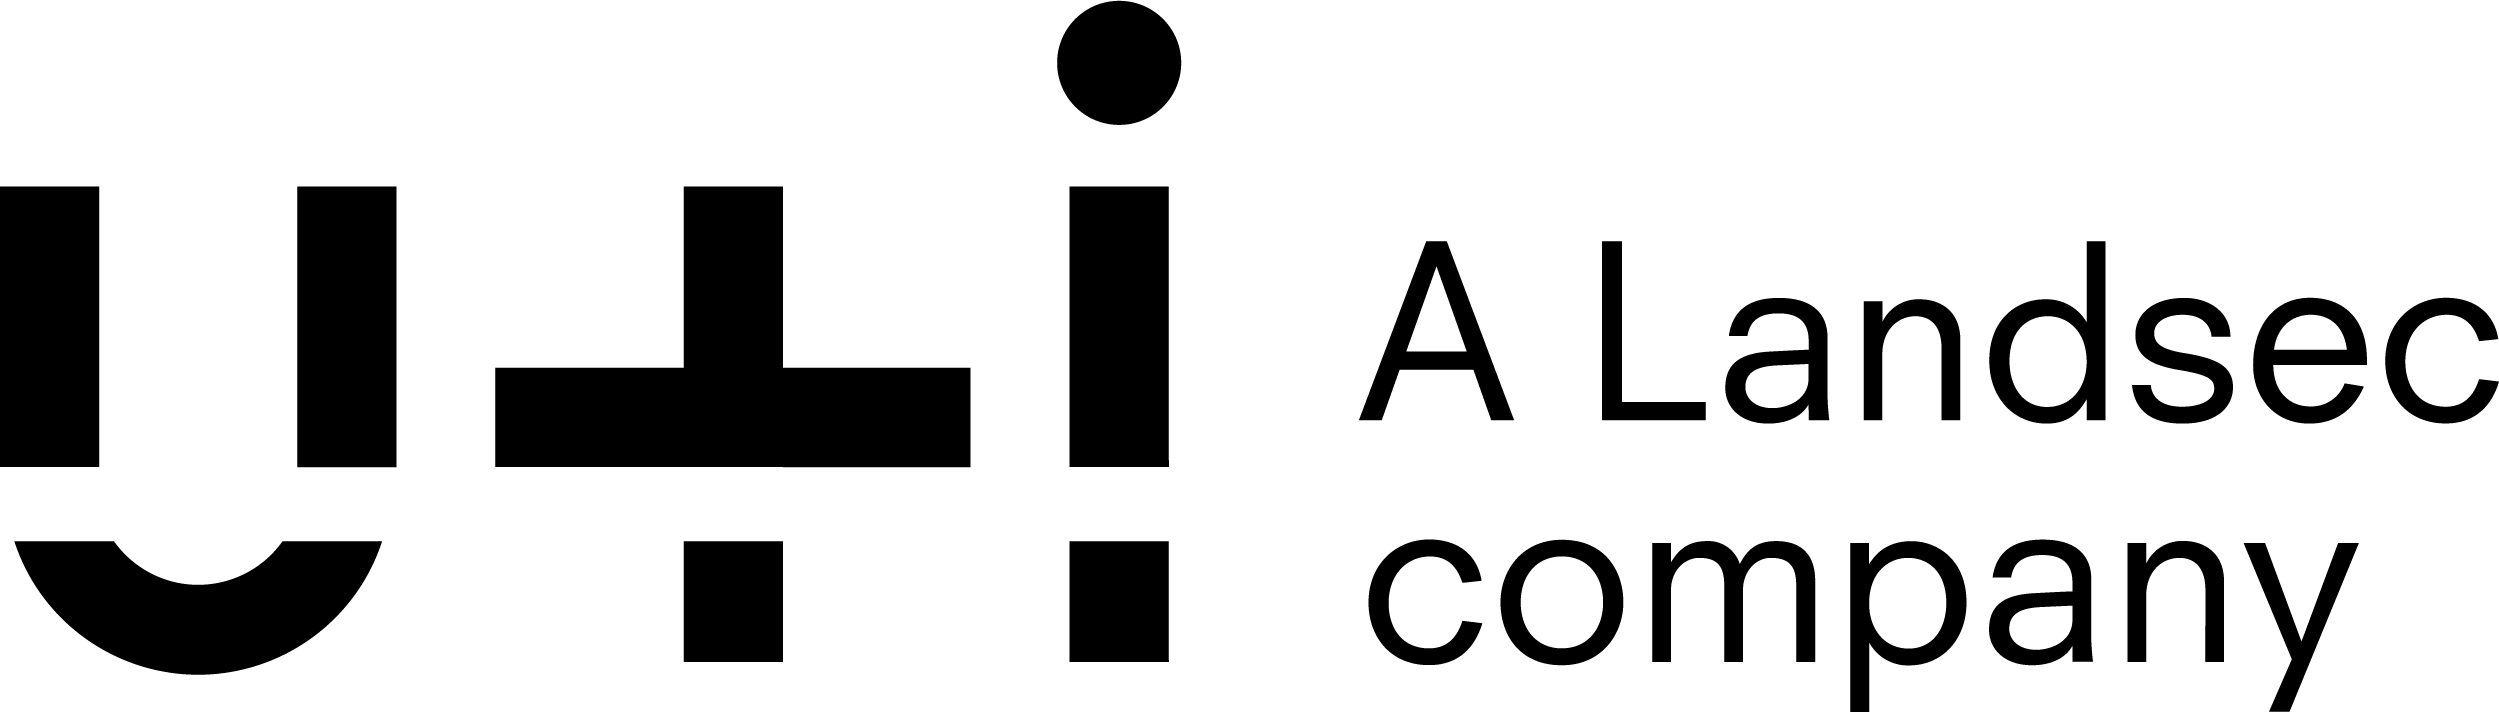 UI_Logo Landsec